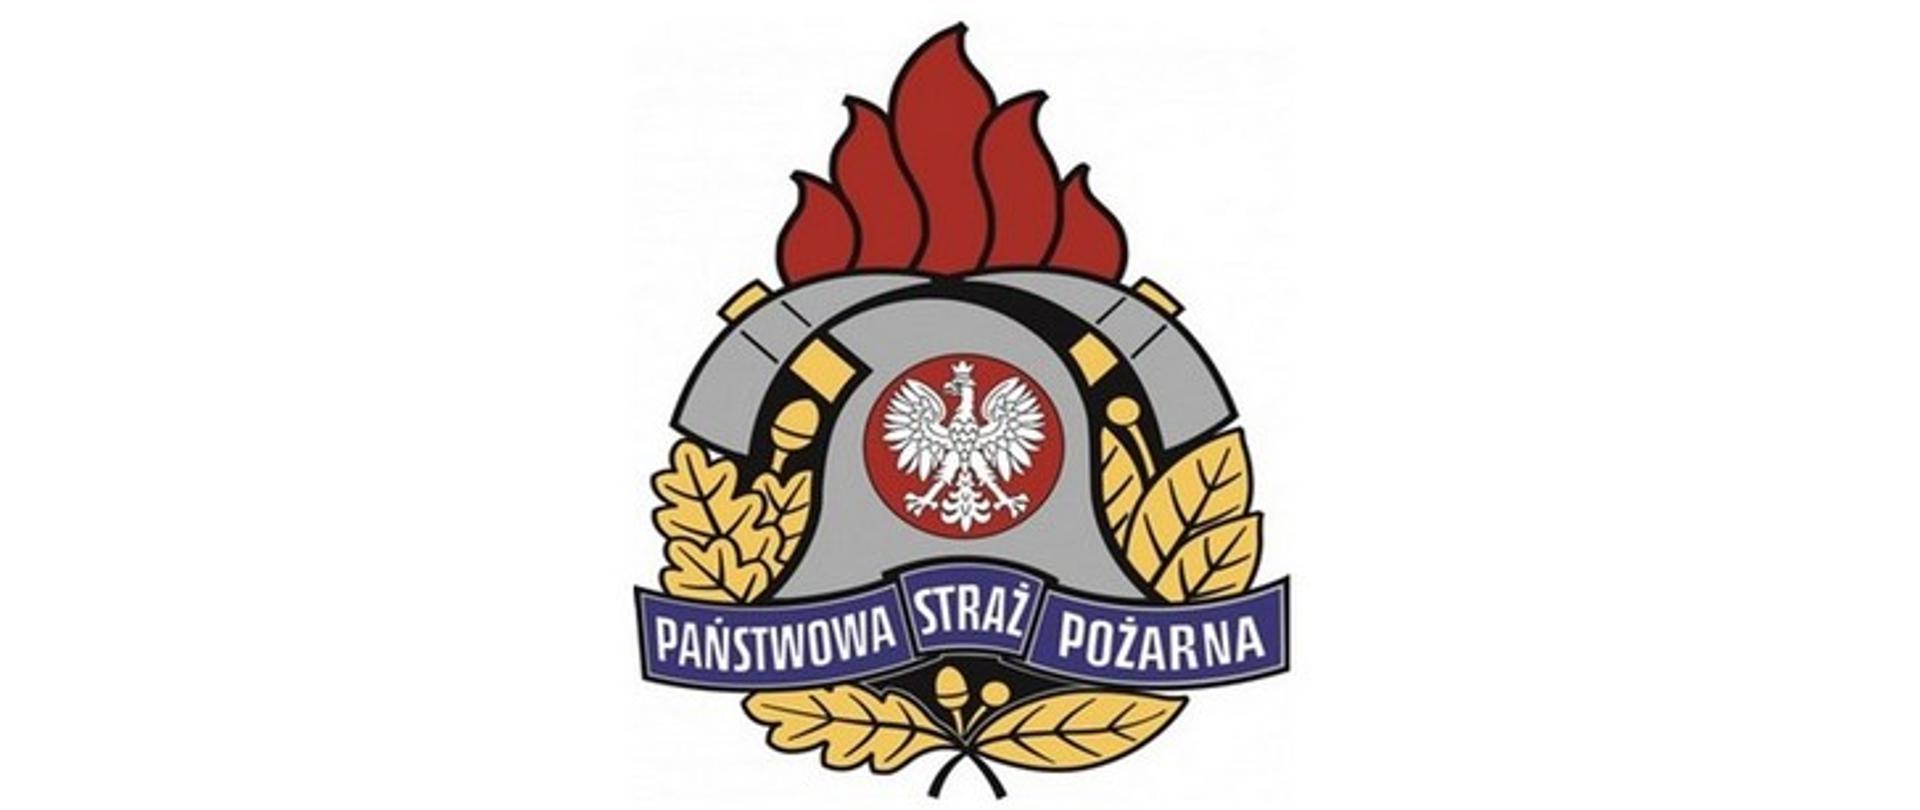 Zdjęcie przedstawia logo Państwowej Straży Pożarnej umieszczone na białym tle.